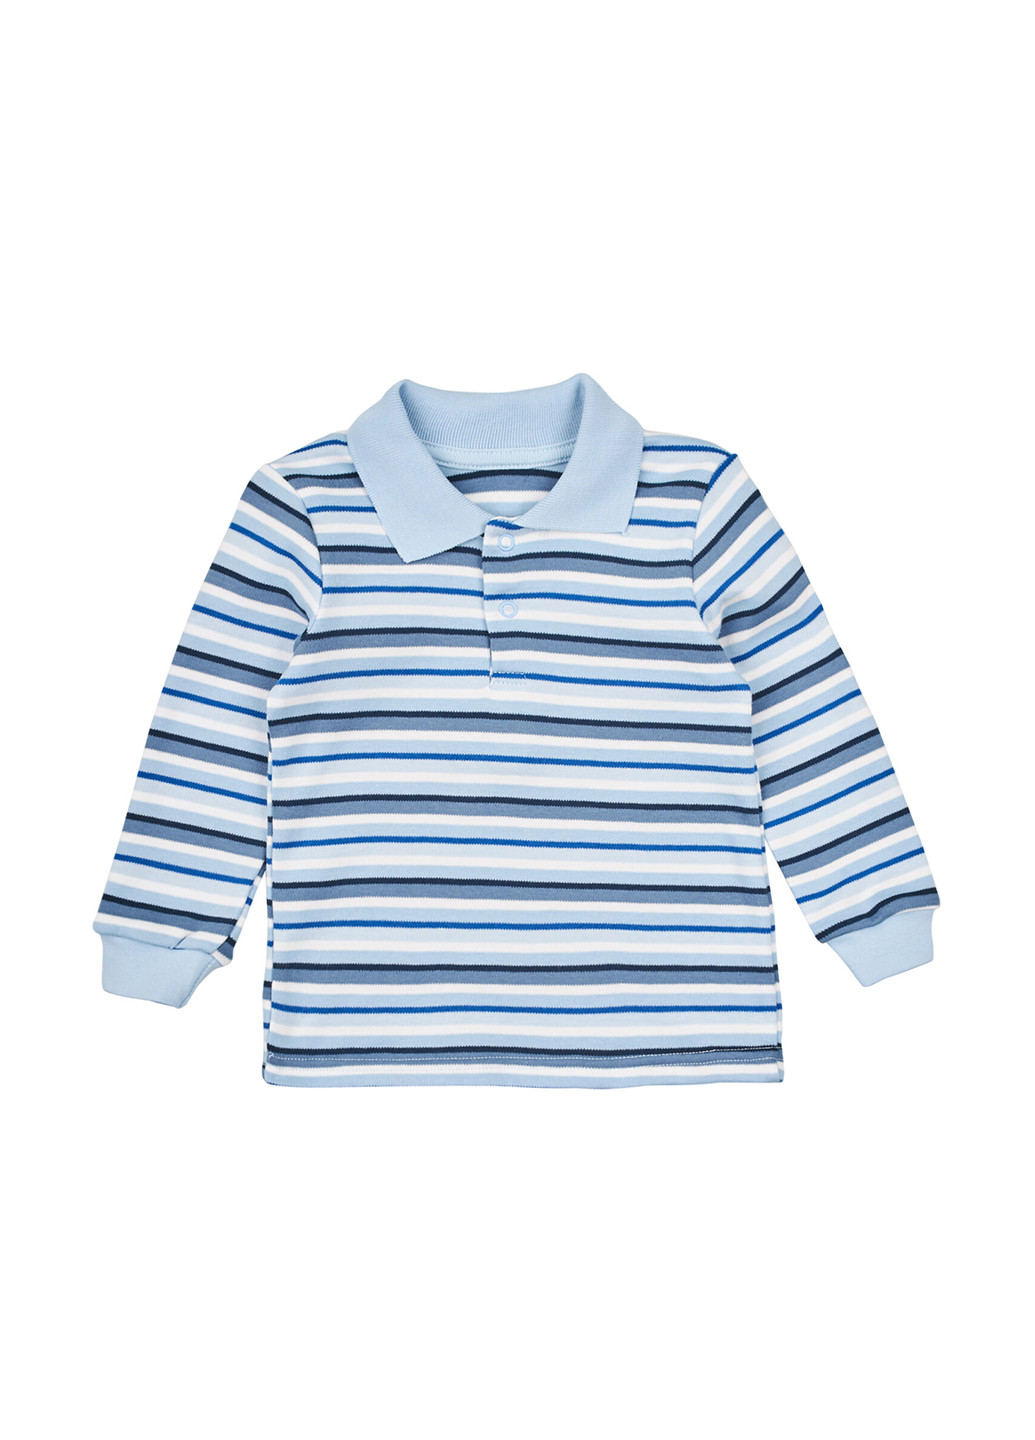 Голубой детская футболка-поло для мальчика Z16 в полоску